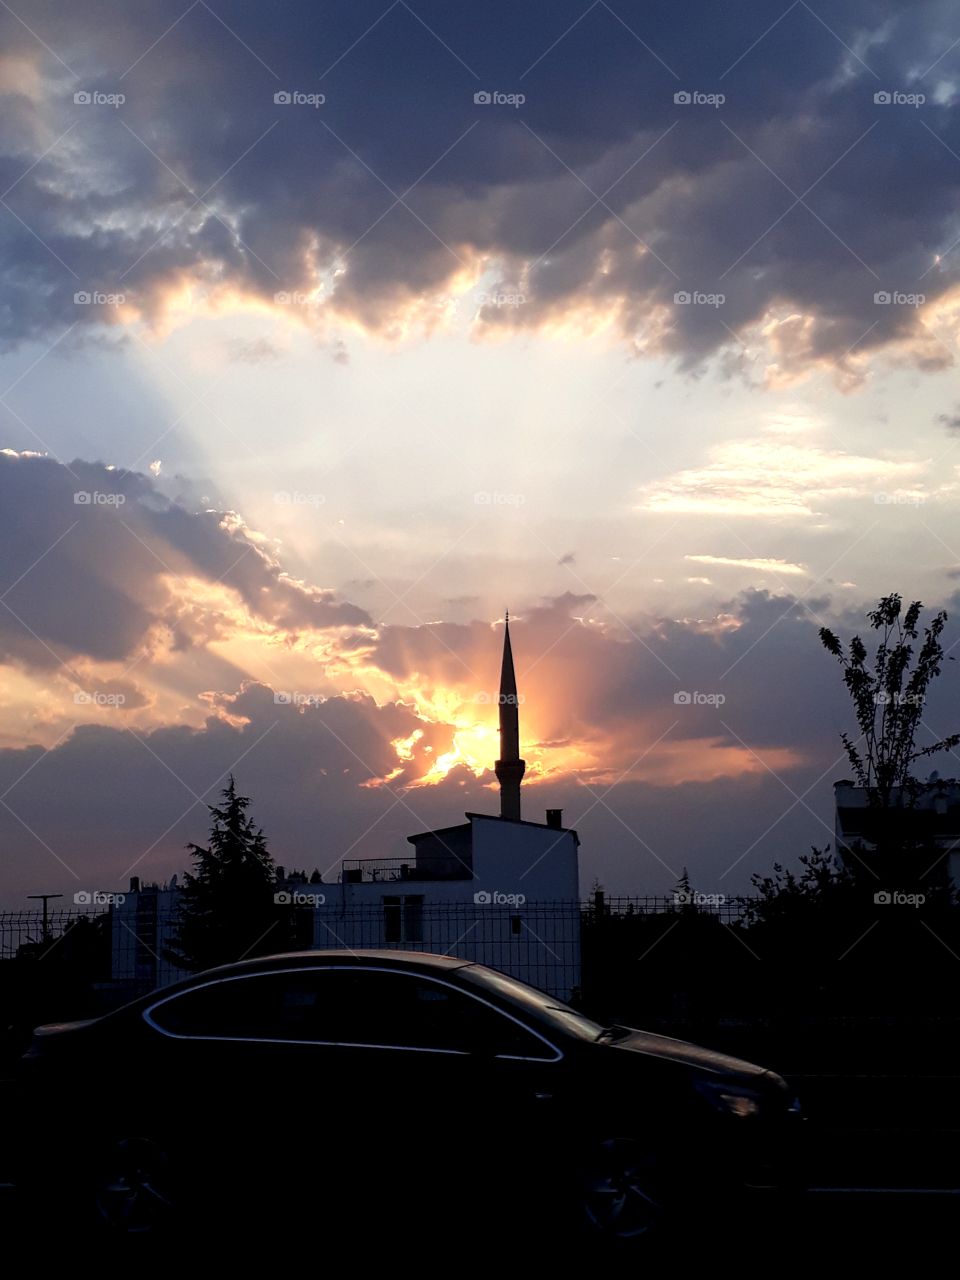 ยามเย็นของเมืองหนึ่งในประเทซตุรกี เมื่อฉันนั่งรถผ่าน เสียงเพลงในมัสยิดดังขึ้น ฉันรู้สึกซาบซึ้งและสงบ